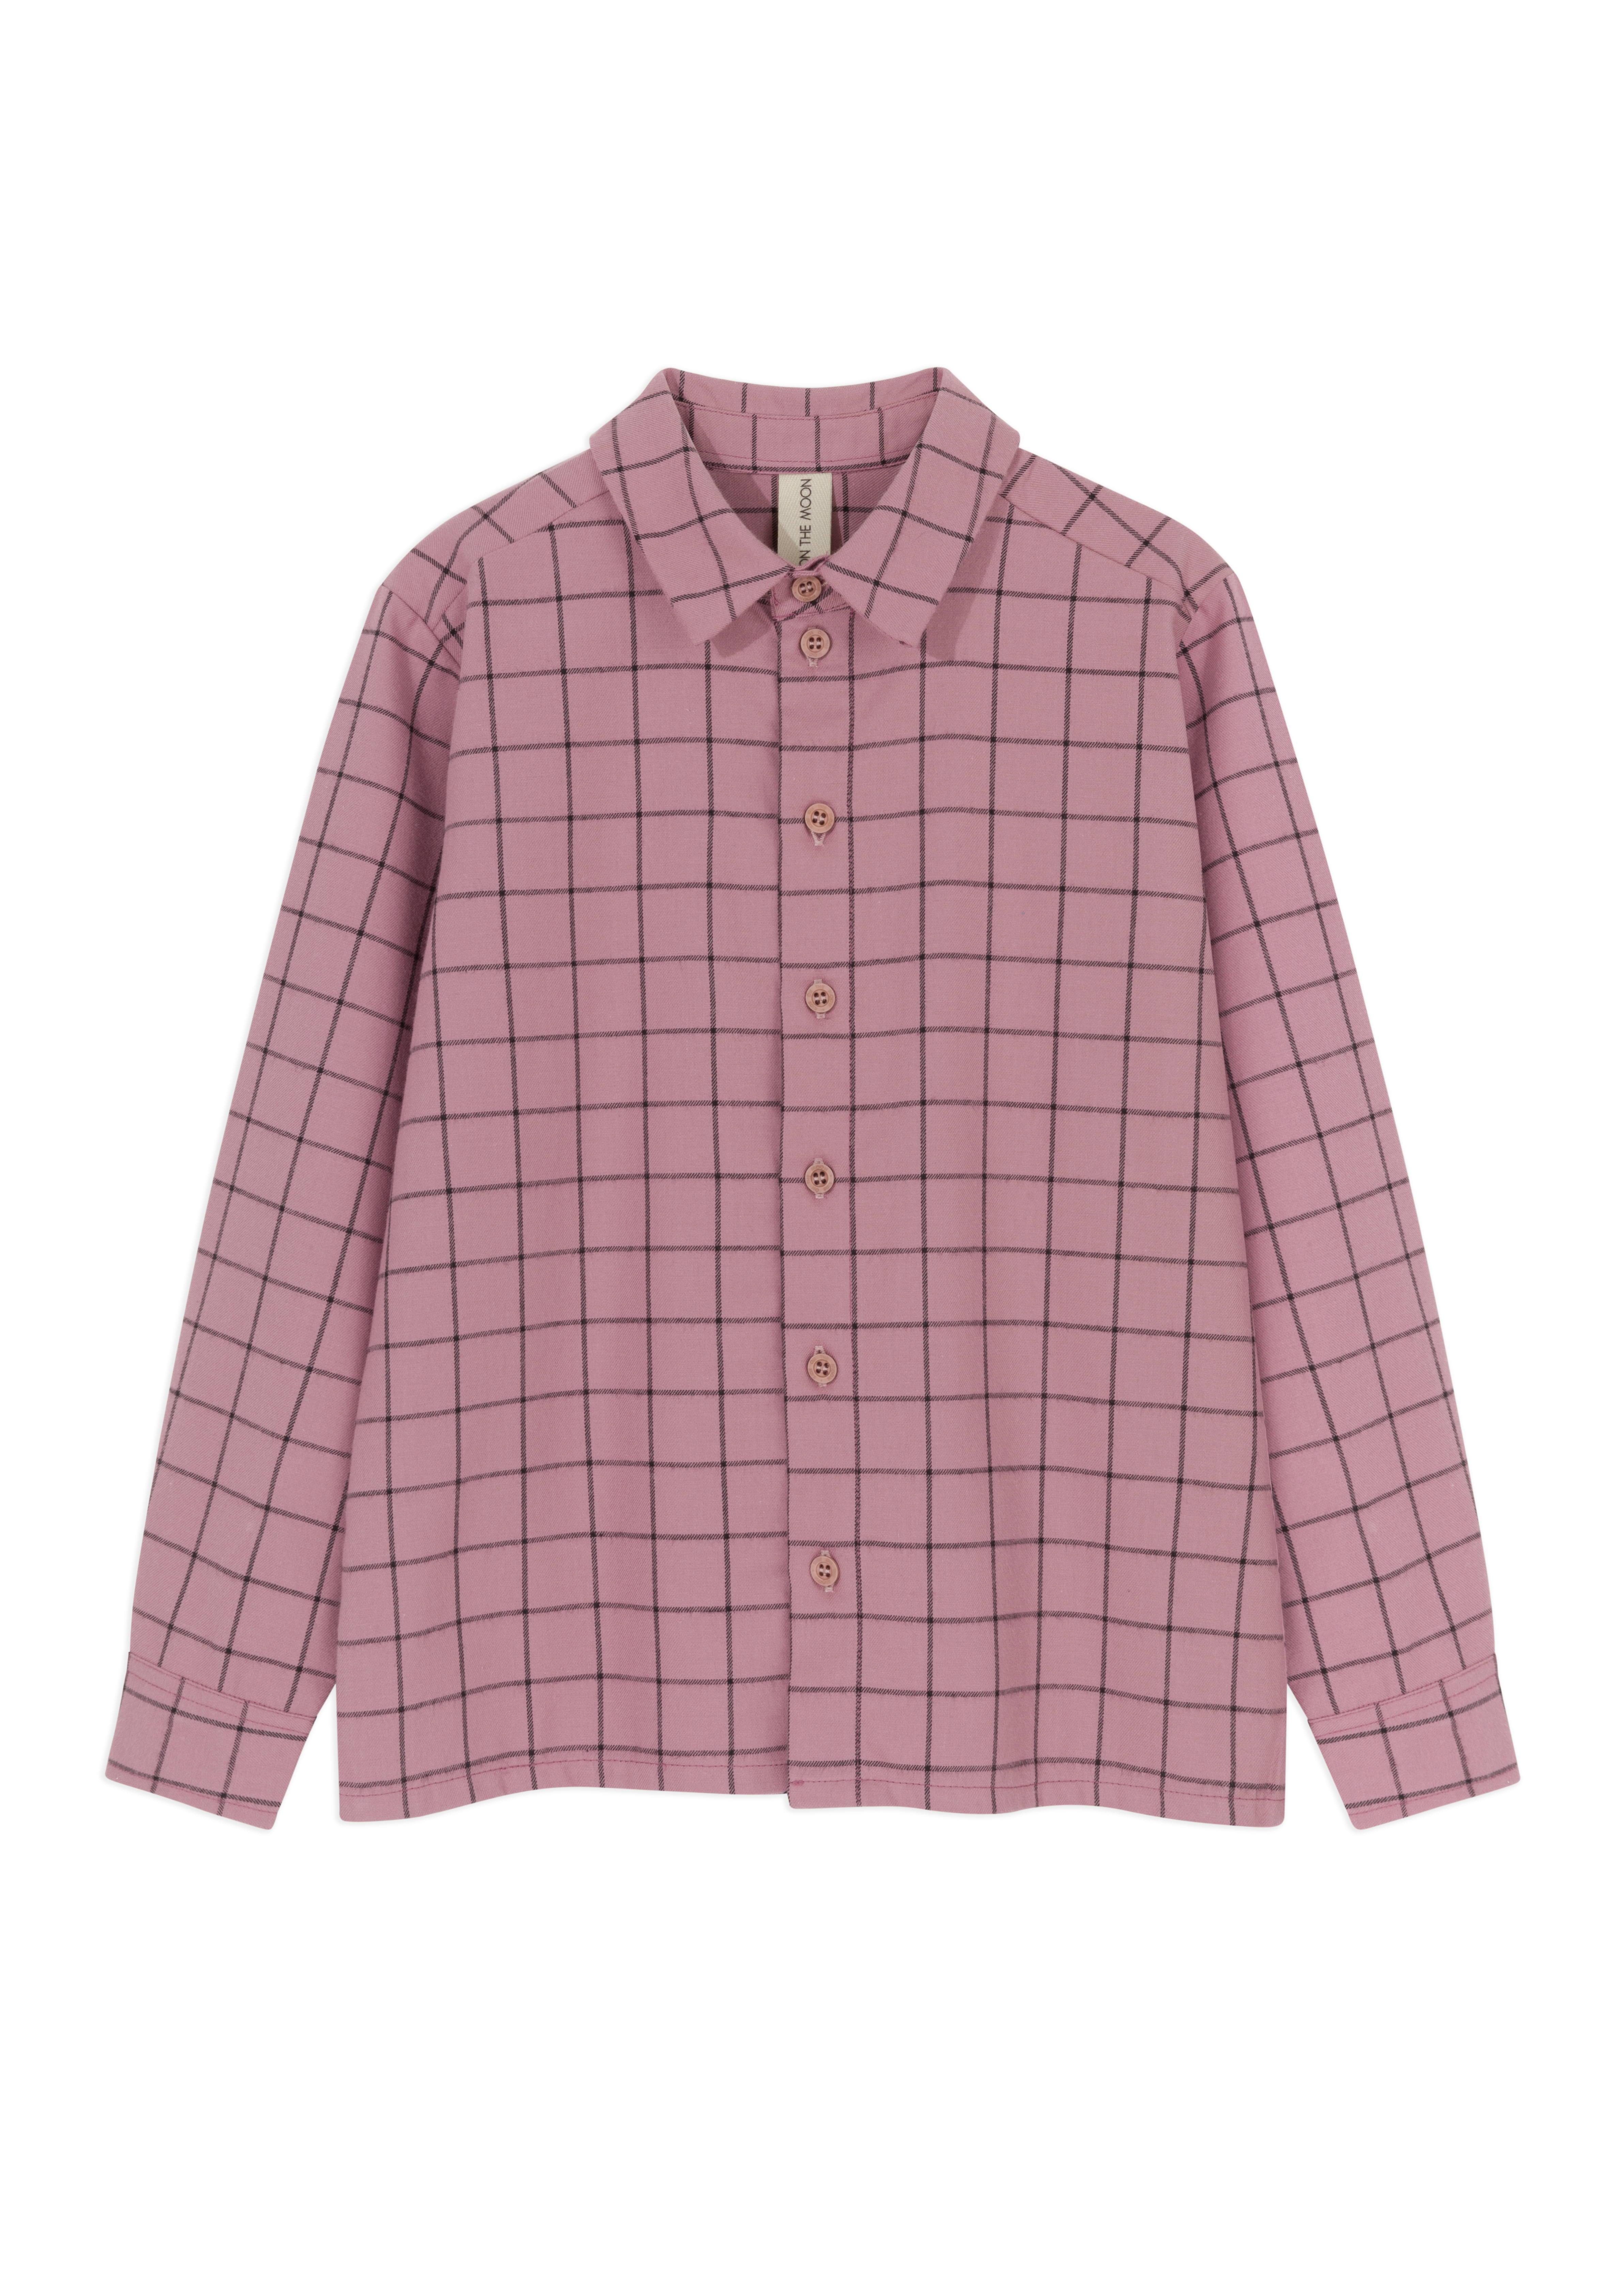 rózowa koszula, koszula w kratkę, dla dzieci, bawełniana koszula, rose shirt, cotton shirt, for kids